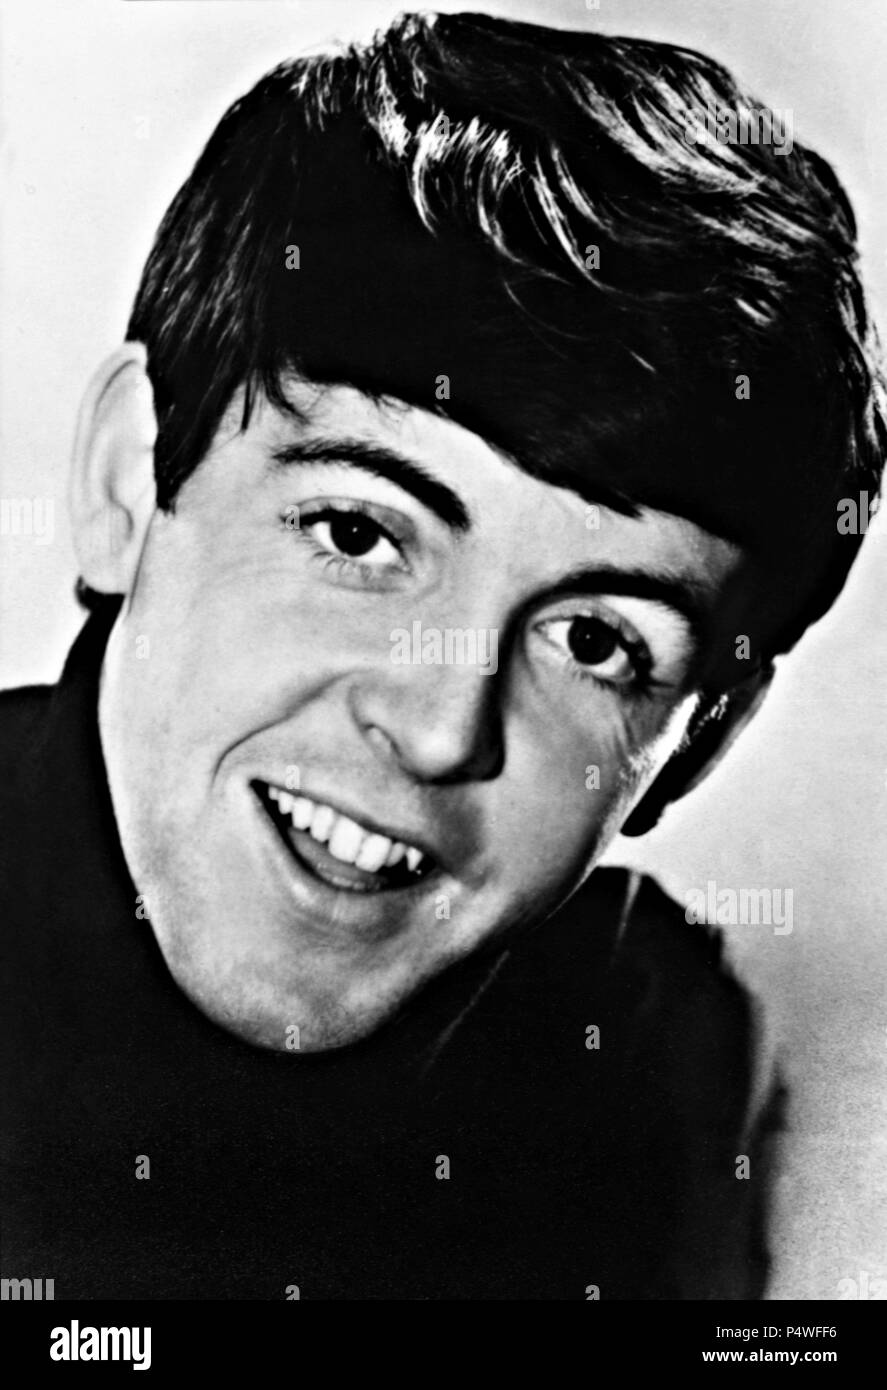 Paul McCartney, uno de los componentes del grupo musical The Beatles. Stock Photo